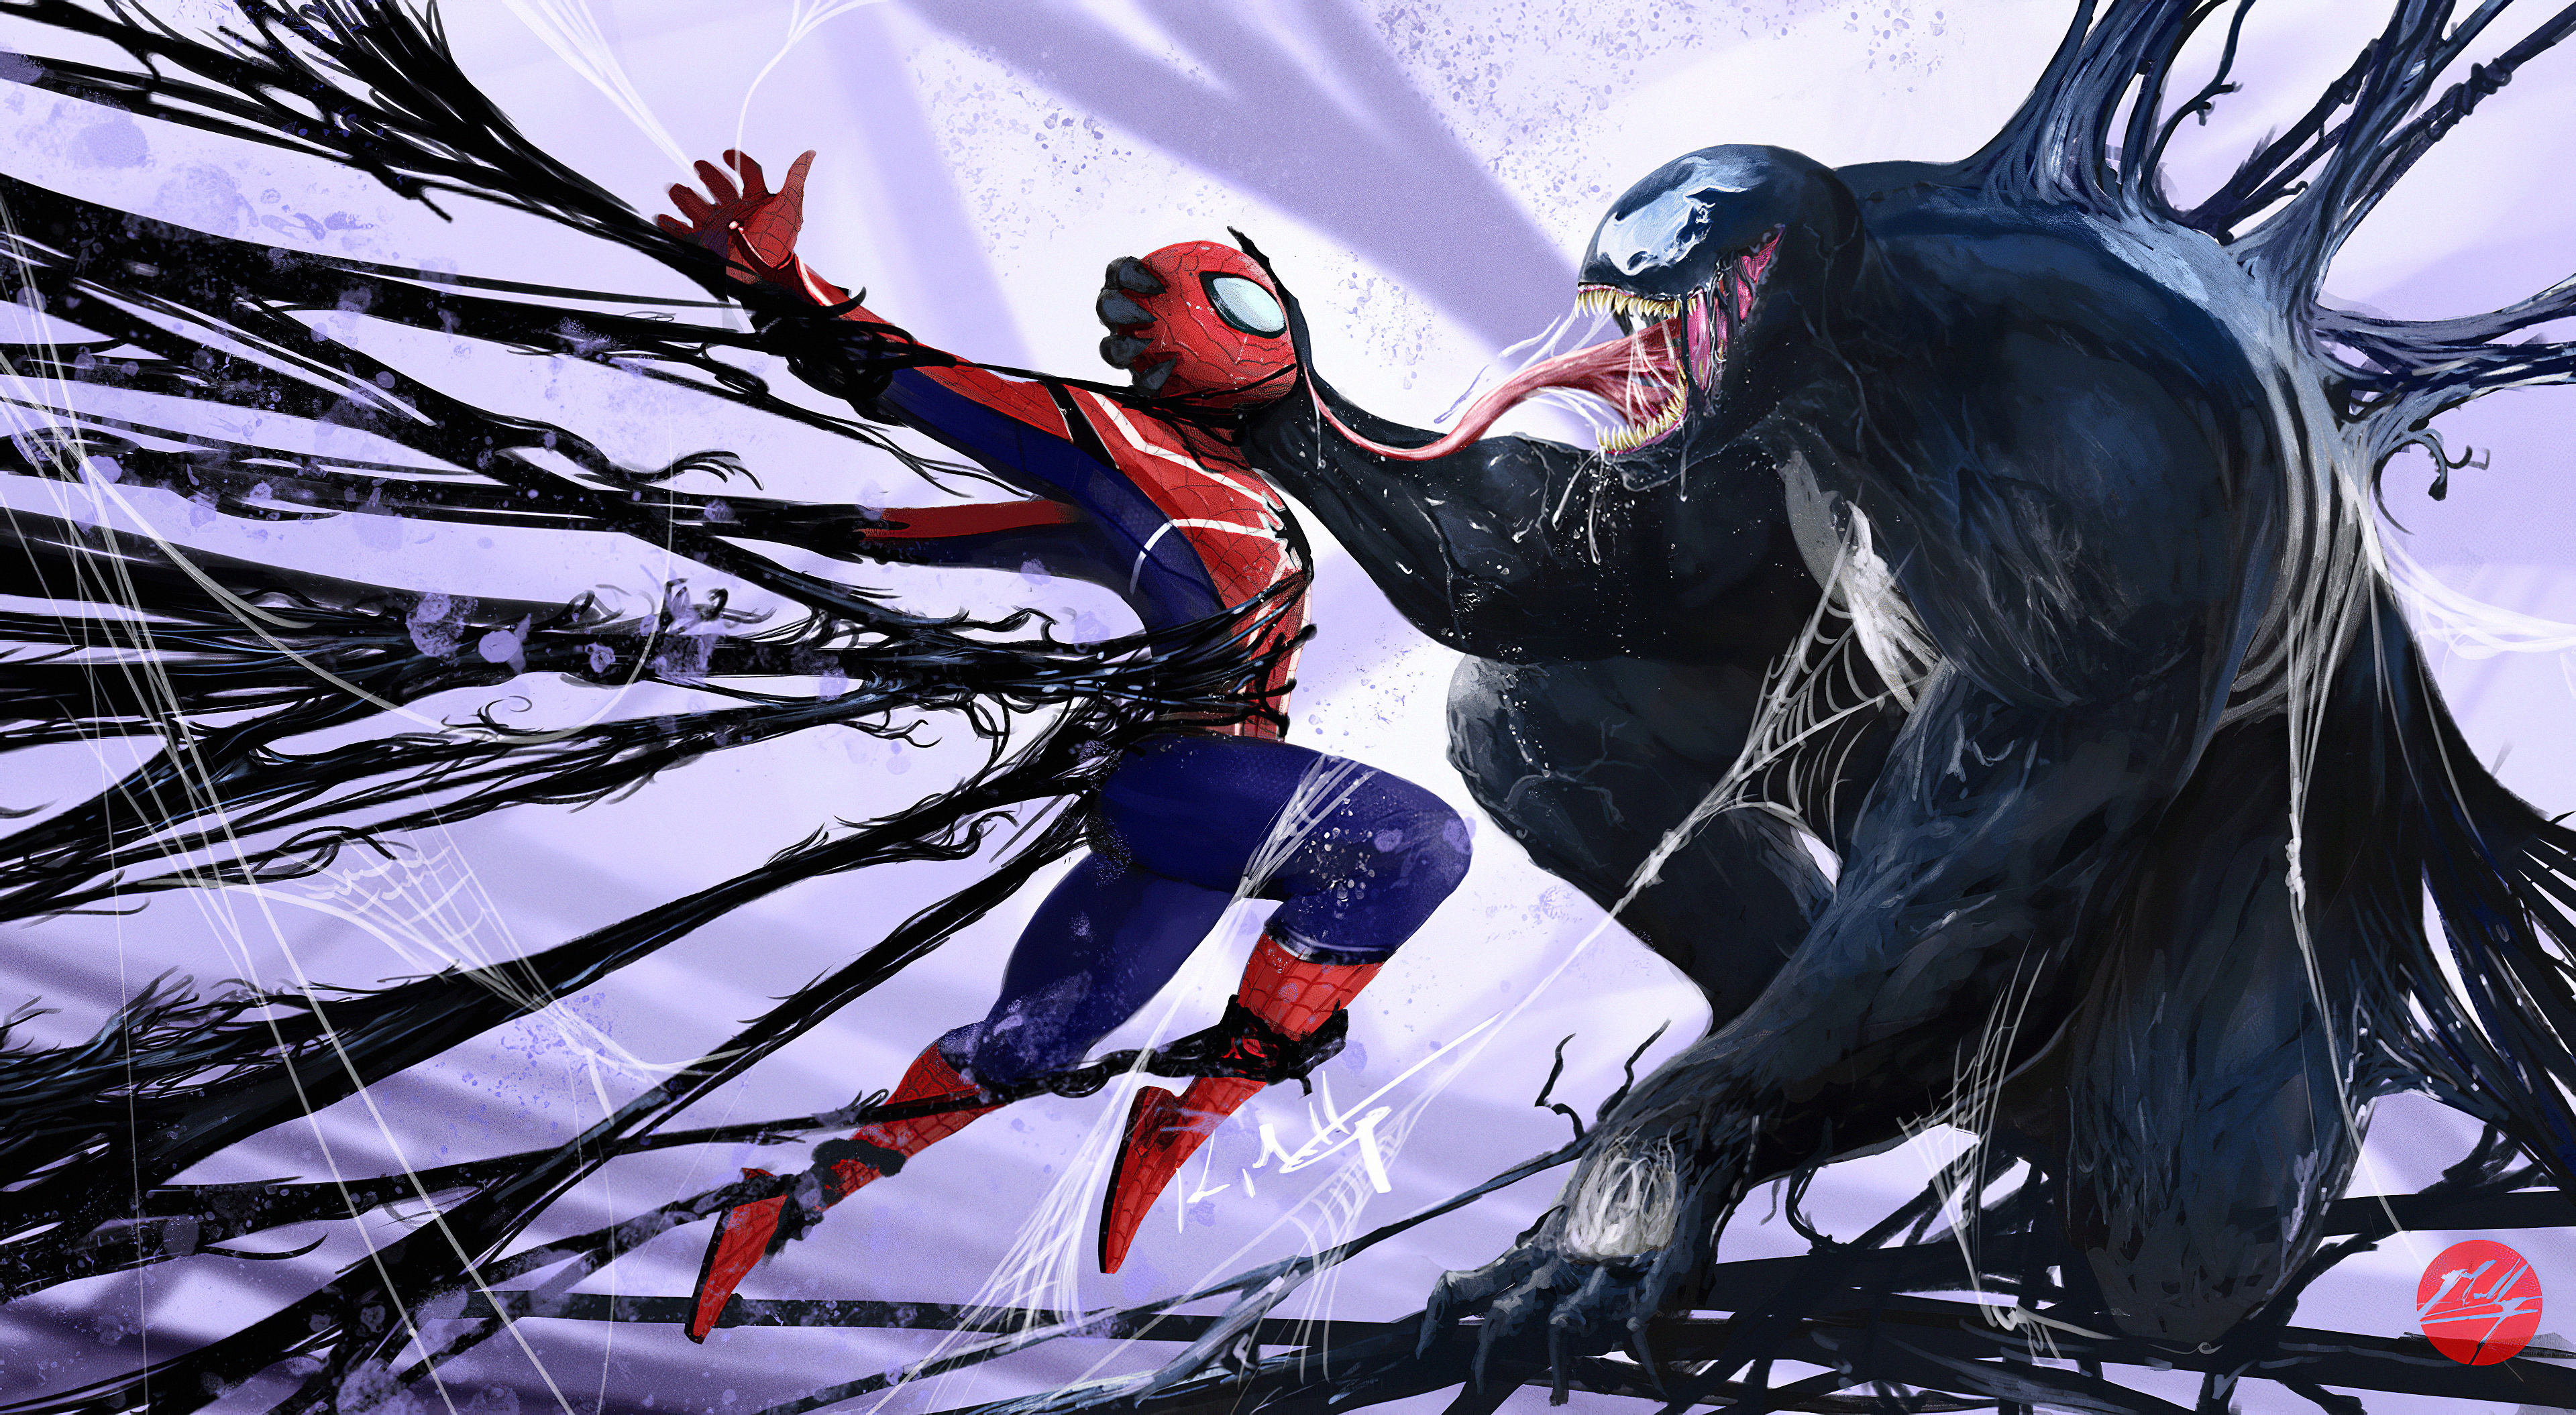 Spider-Man Venom Skin Wallpapers